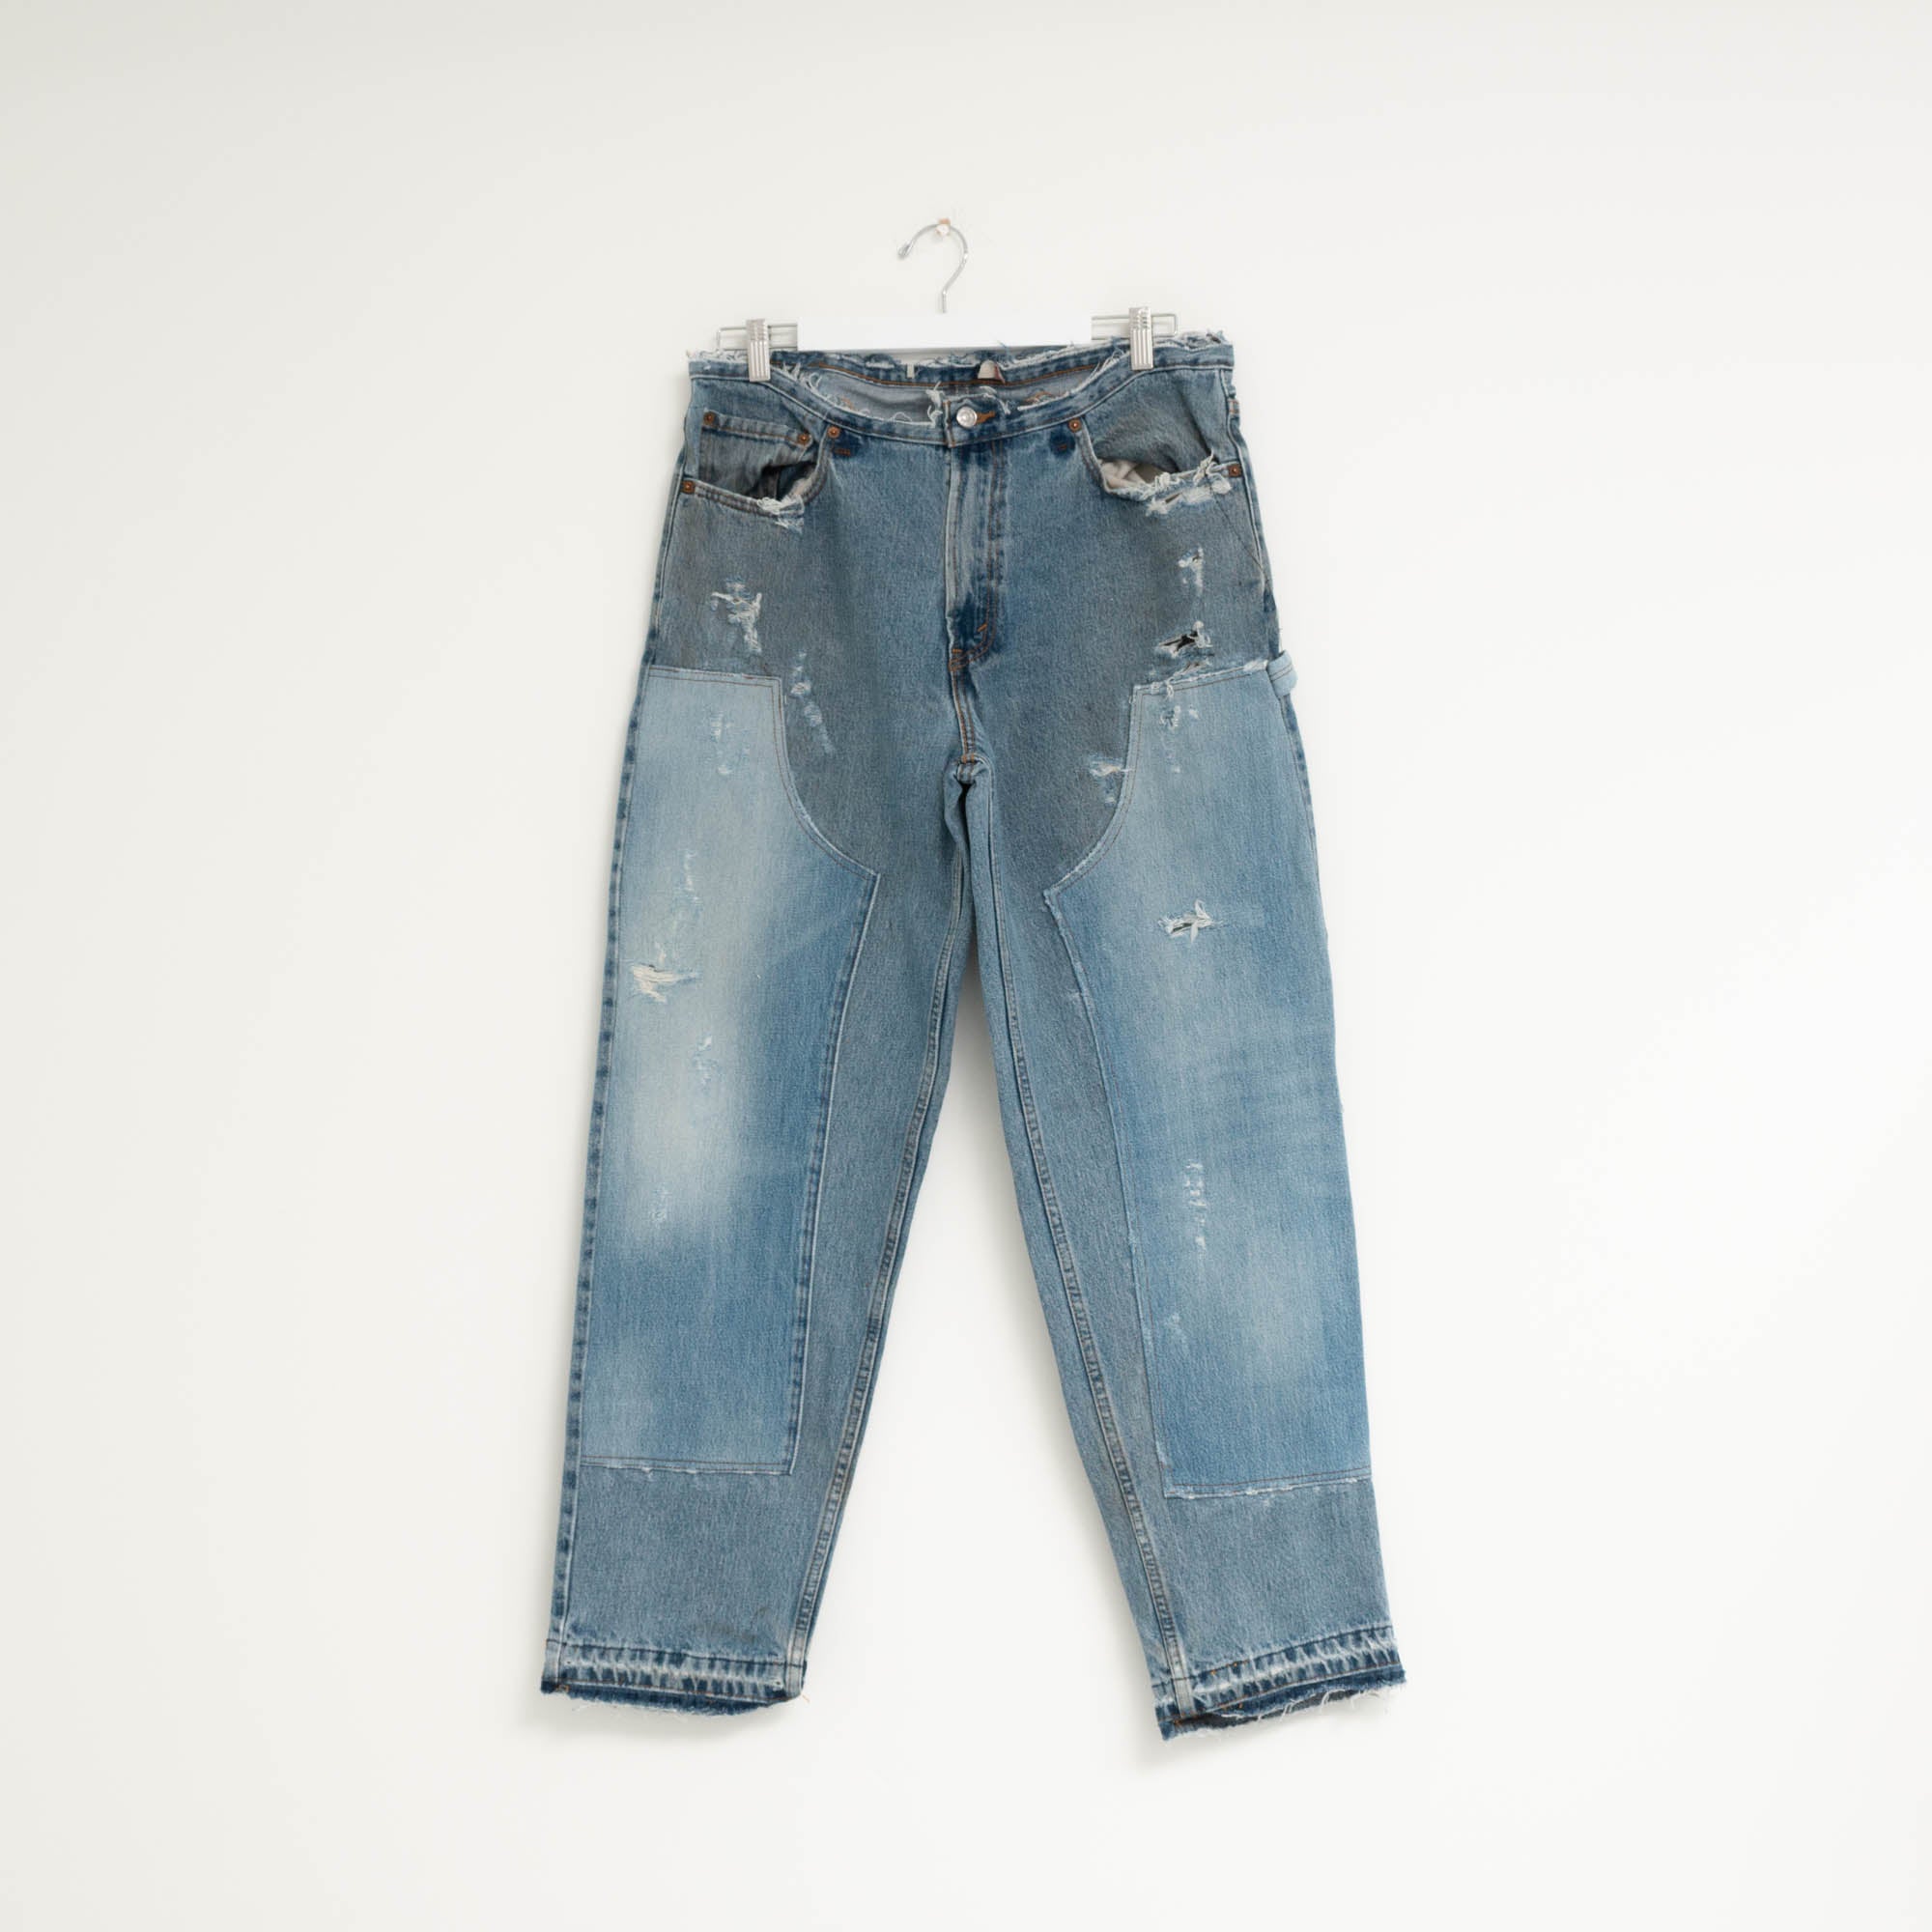 "CARPENTER" Jeans W35 L31